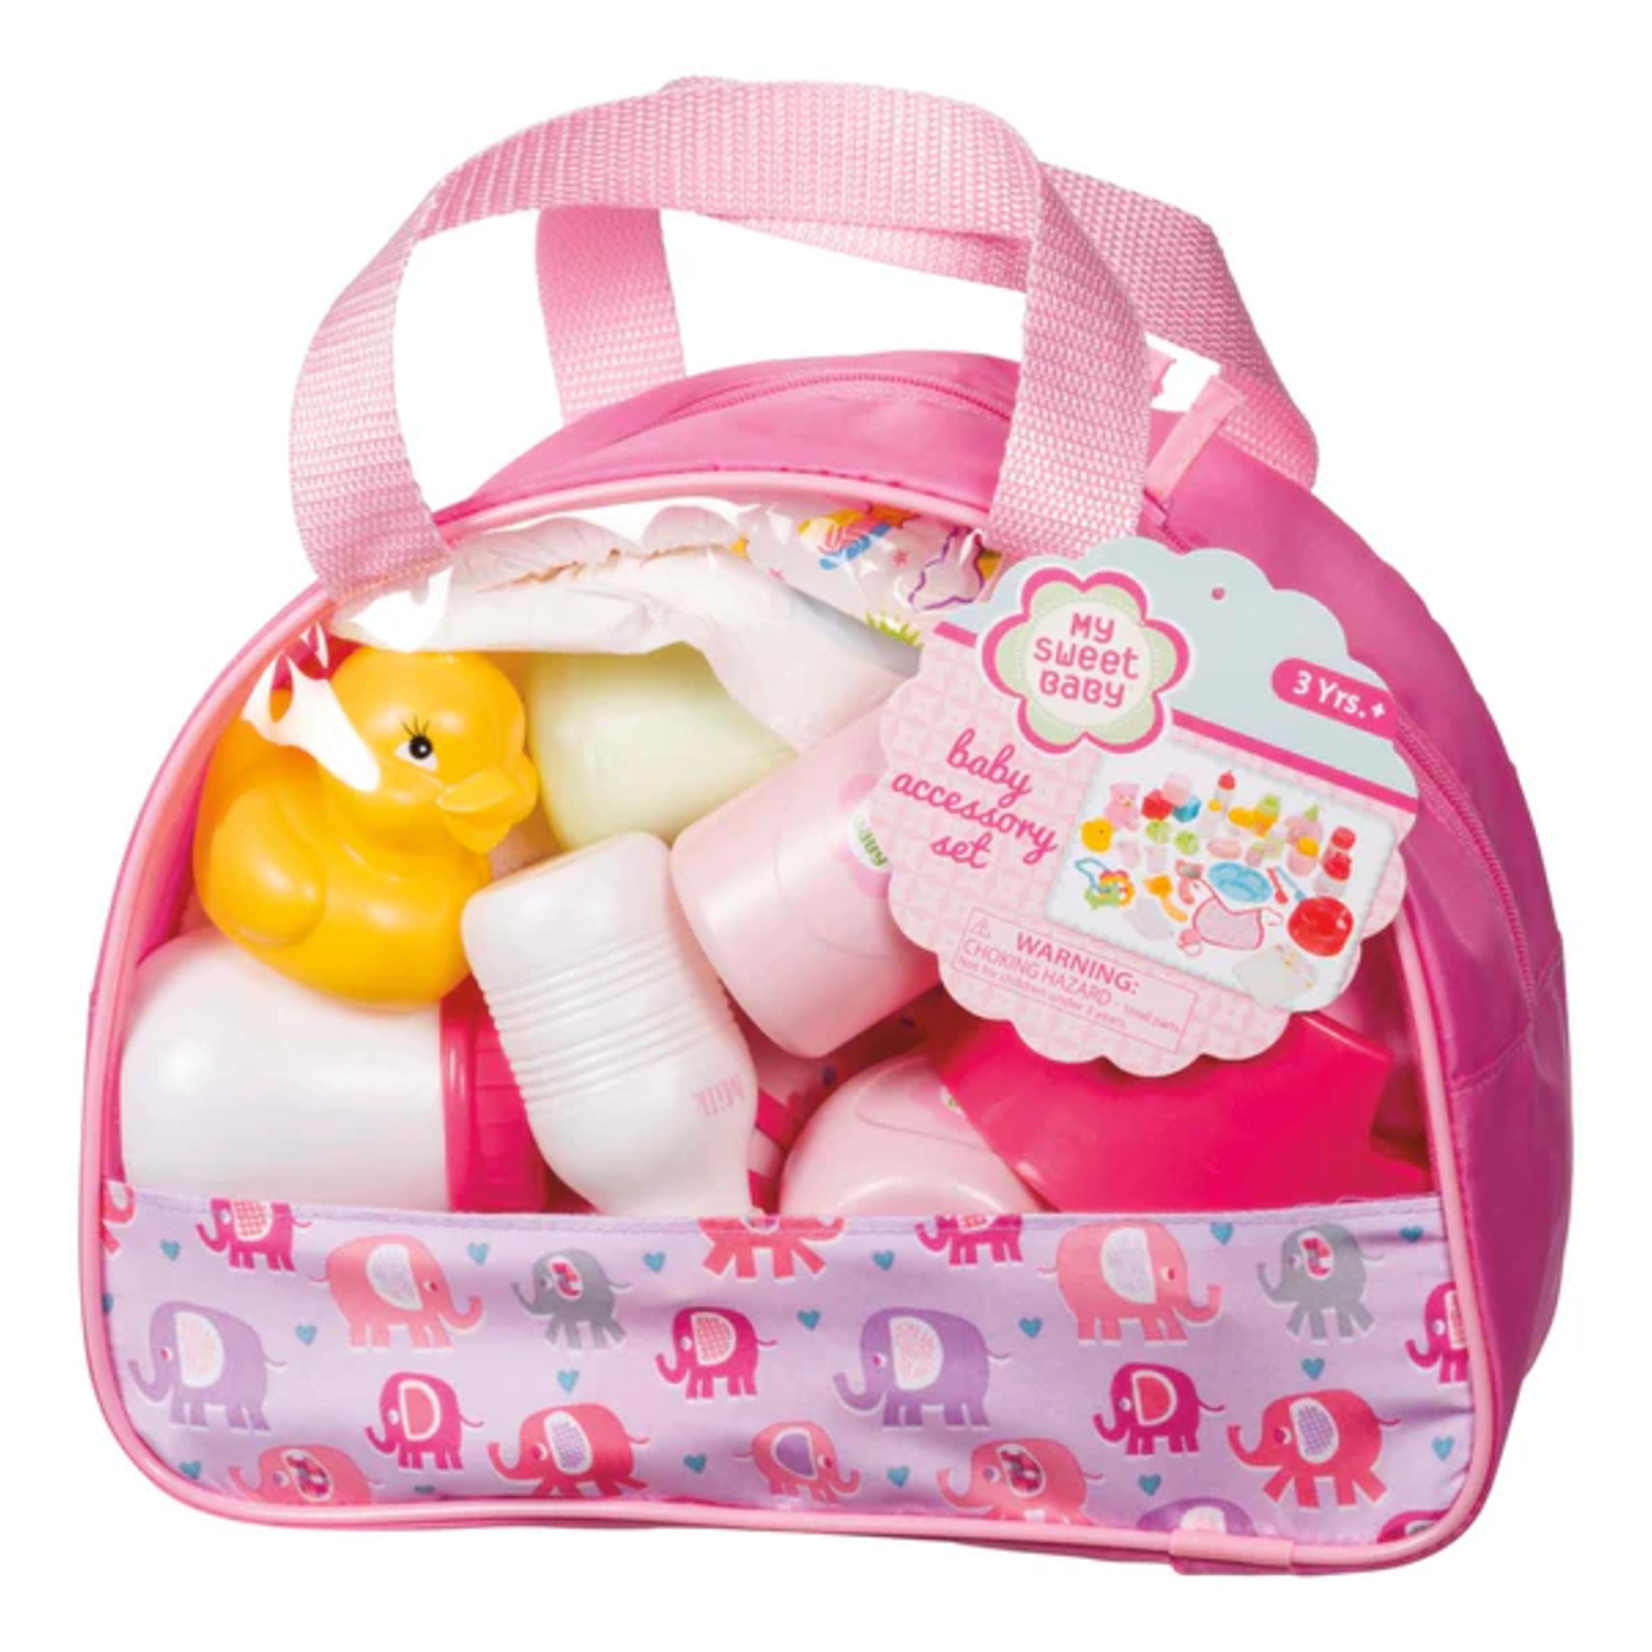 Toysmith Baby Accessory Kit